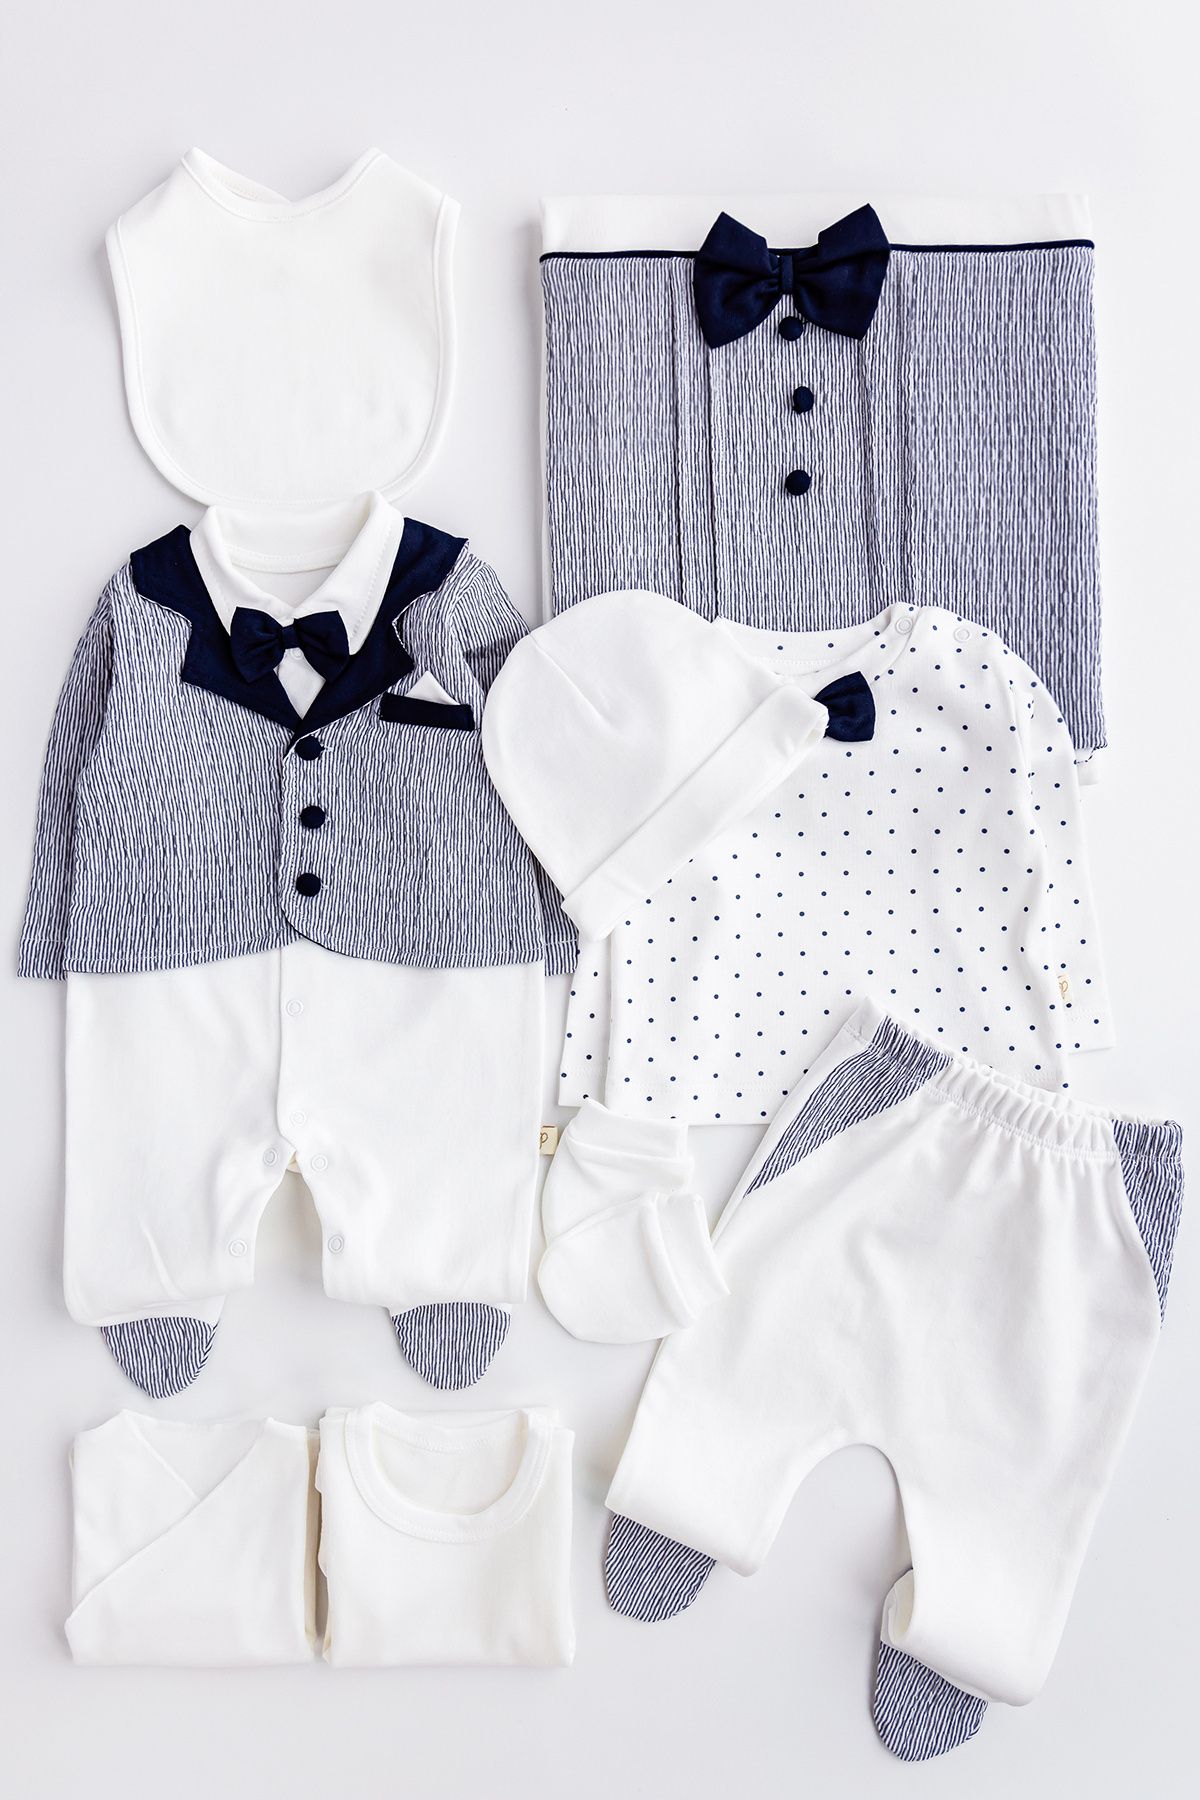 Babymod Papyonlu Ceketli Tulumlu 10 Parça Erkek Bebek Hastane Çıkışı Bebek Takımı